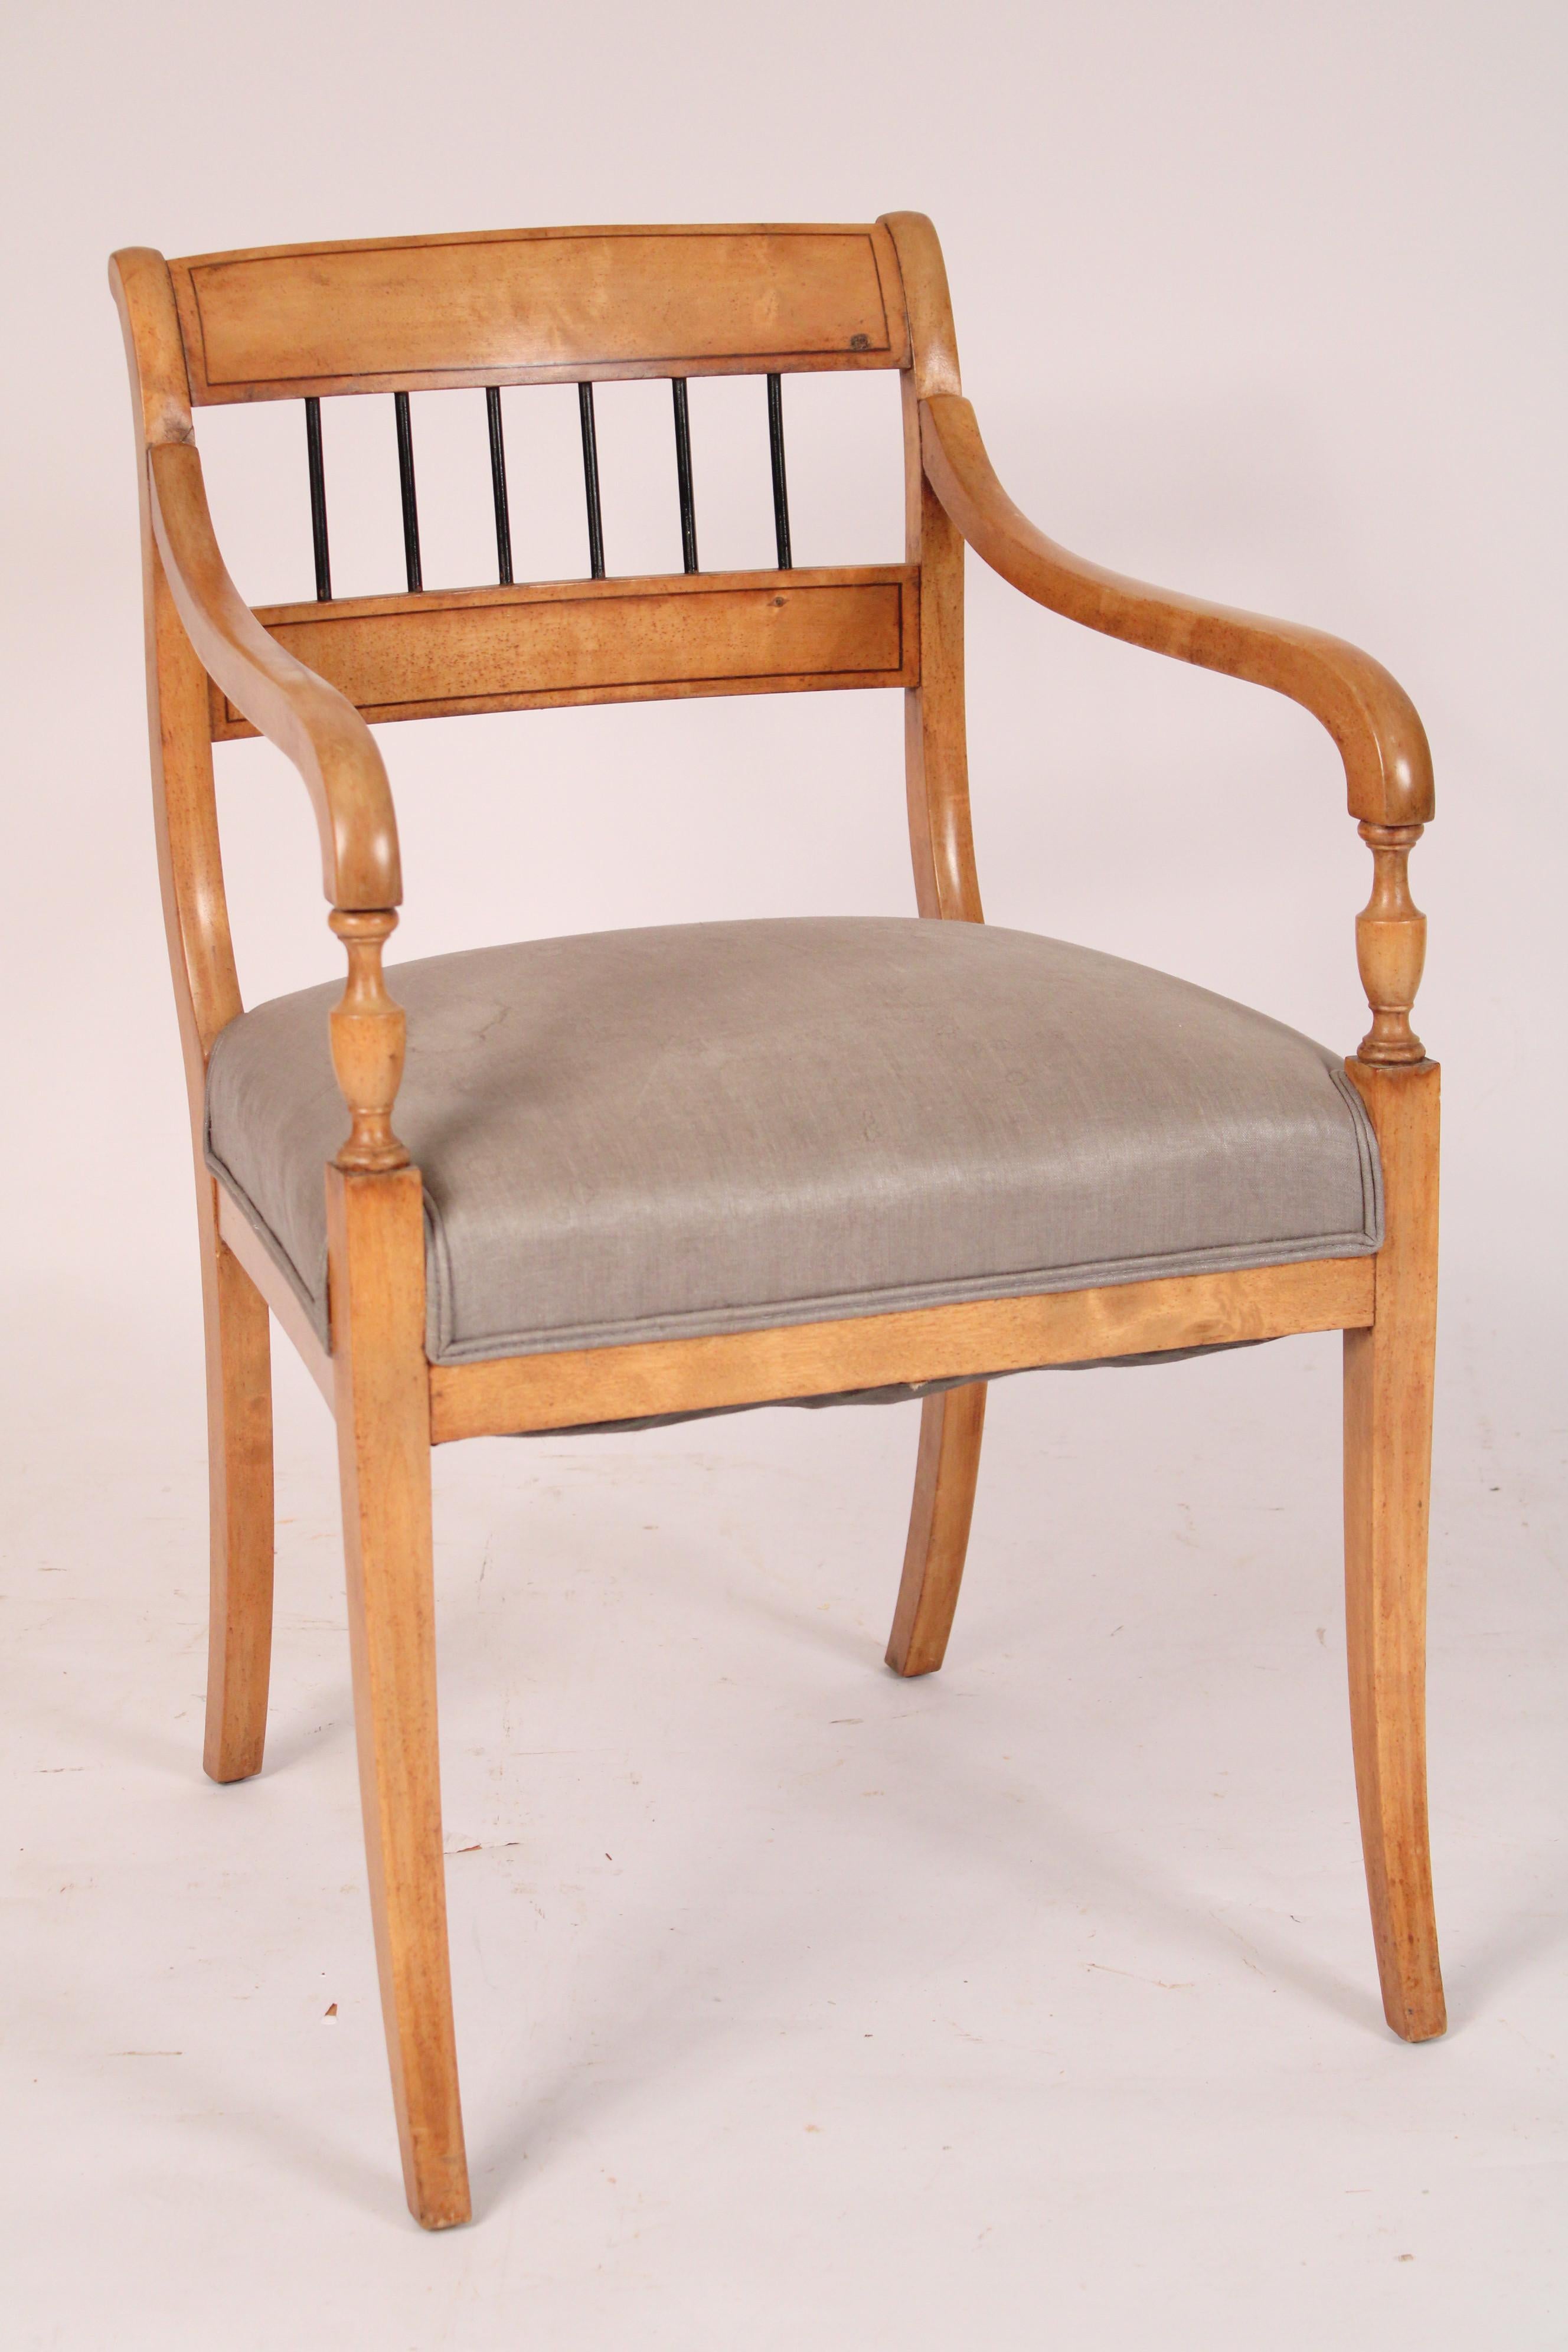 Paire de fauteuils en hêtre de style néoclassique, vers les années 1930. Le dossier est orné d'une traverse incisée en noir et de fuseaux ébonisés. L'assise est tapissée et les accoudoirs reposent sur des supports de bras en forme de vase et sur des